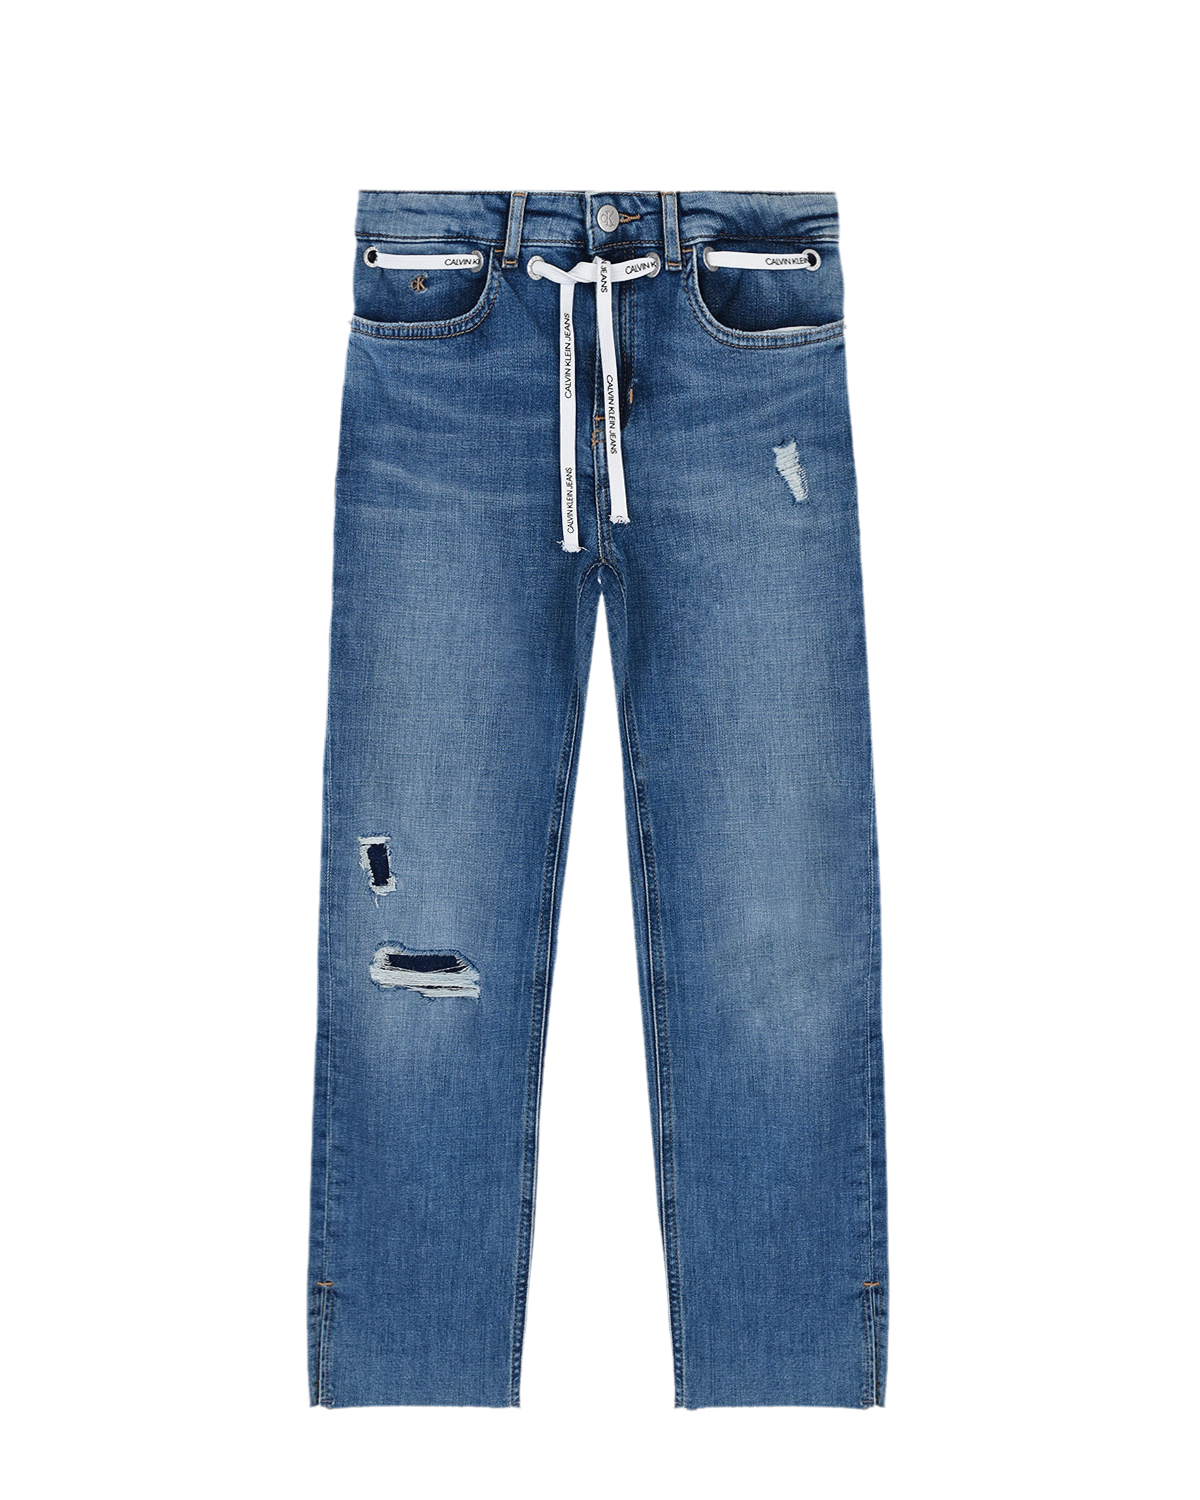 Голубые джинсы с белым шнурком Calvin Klein детские